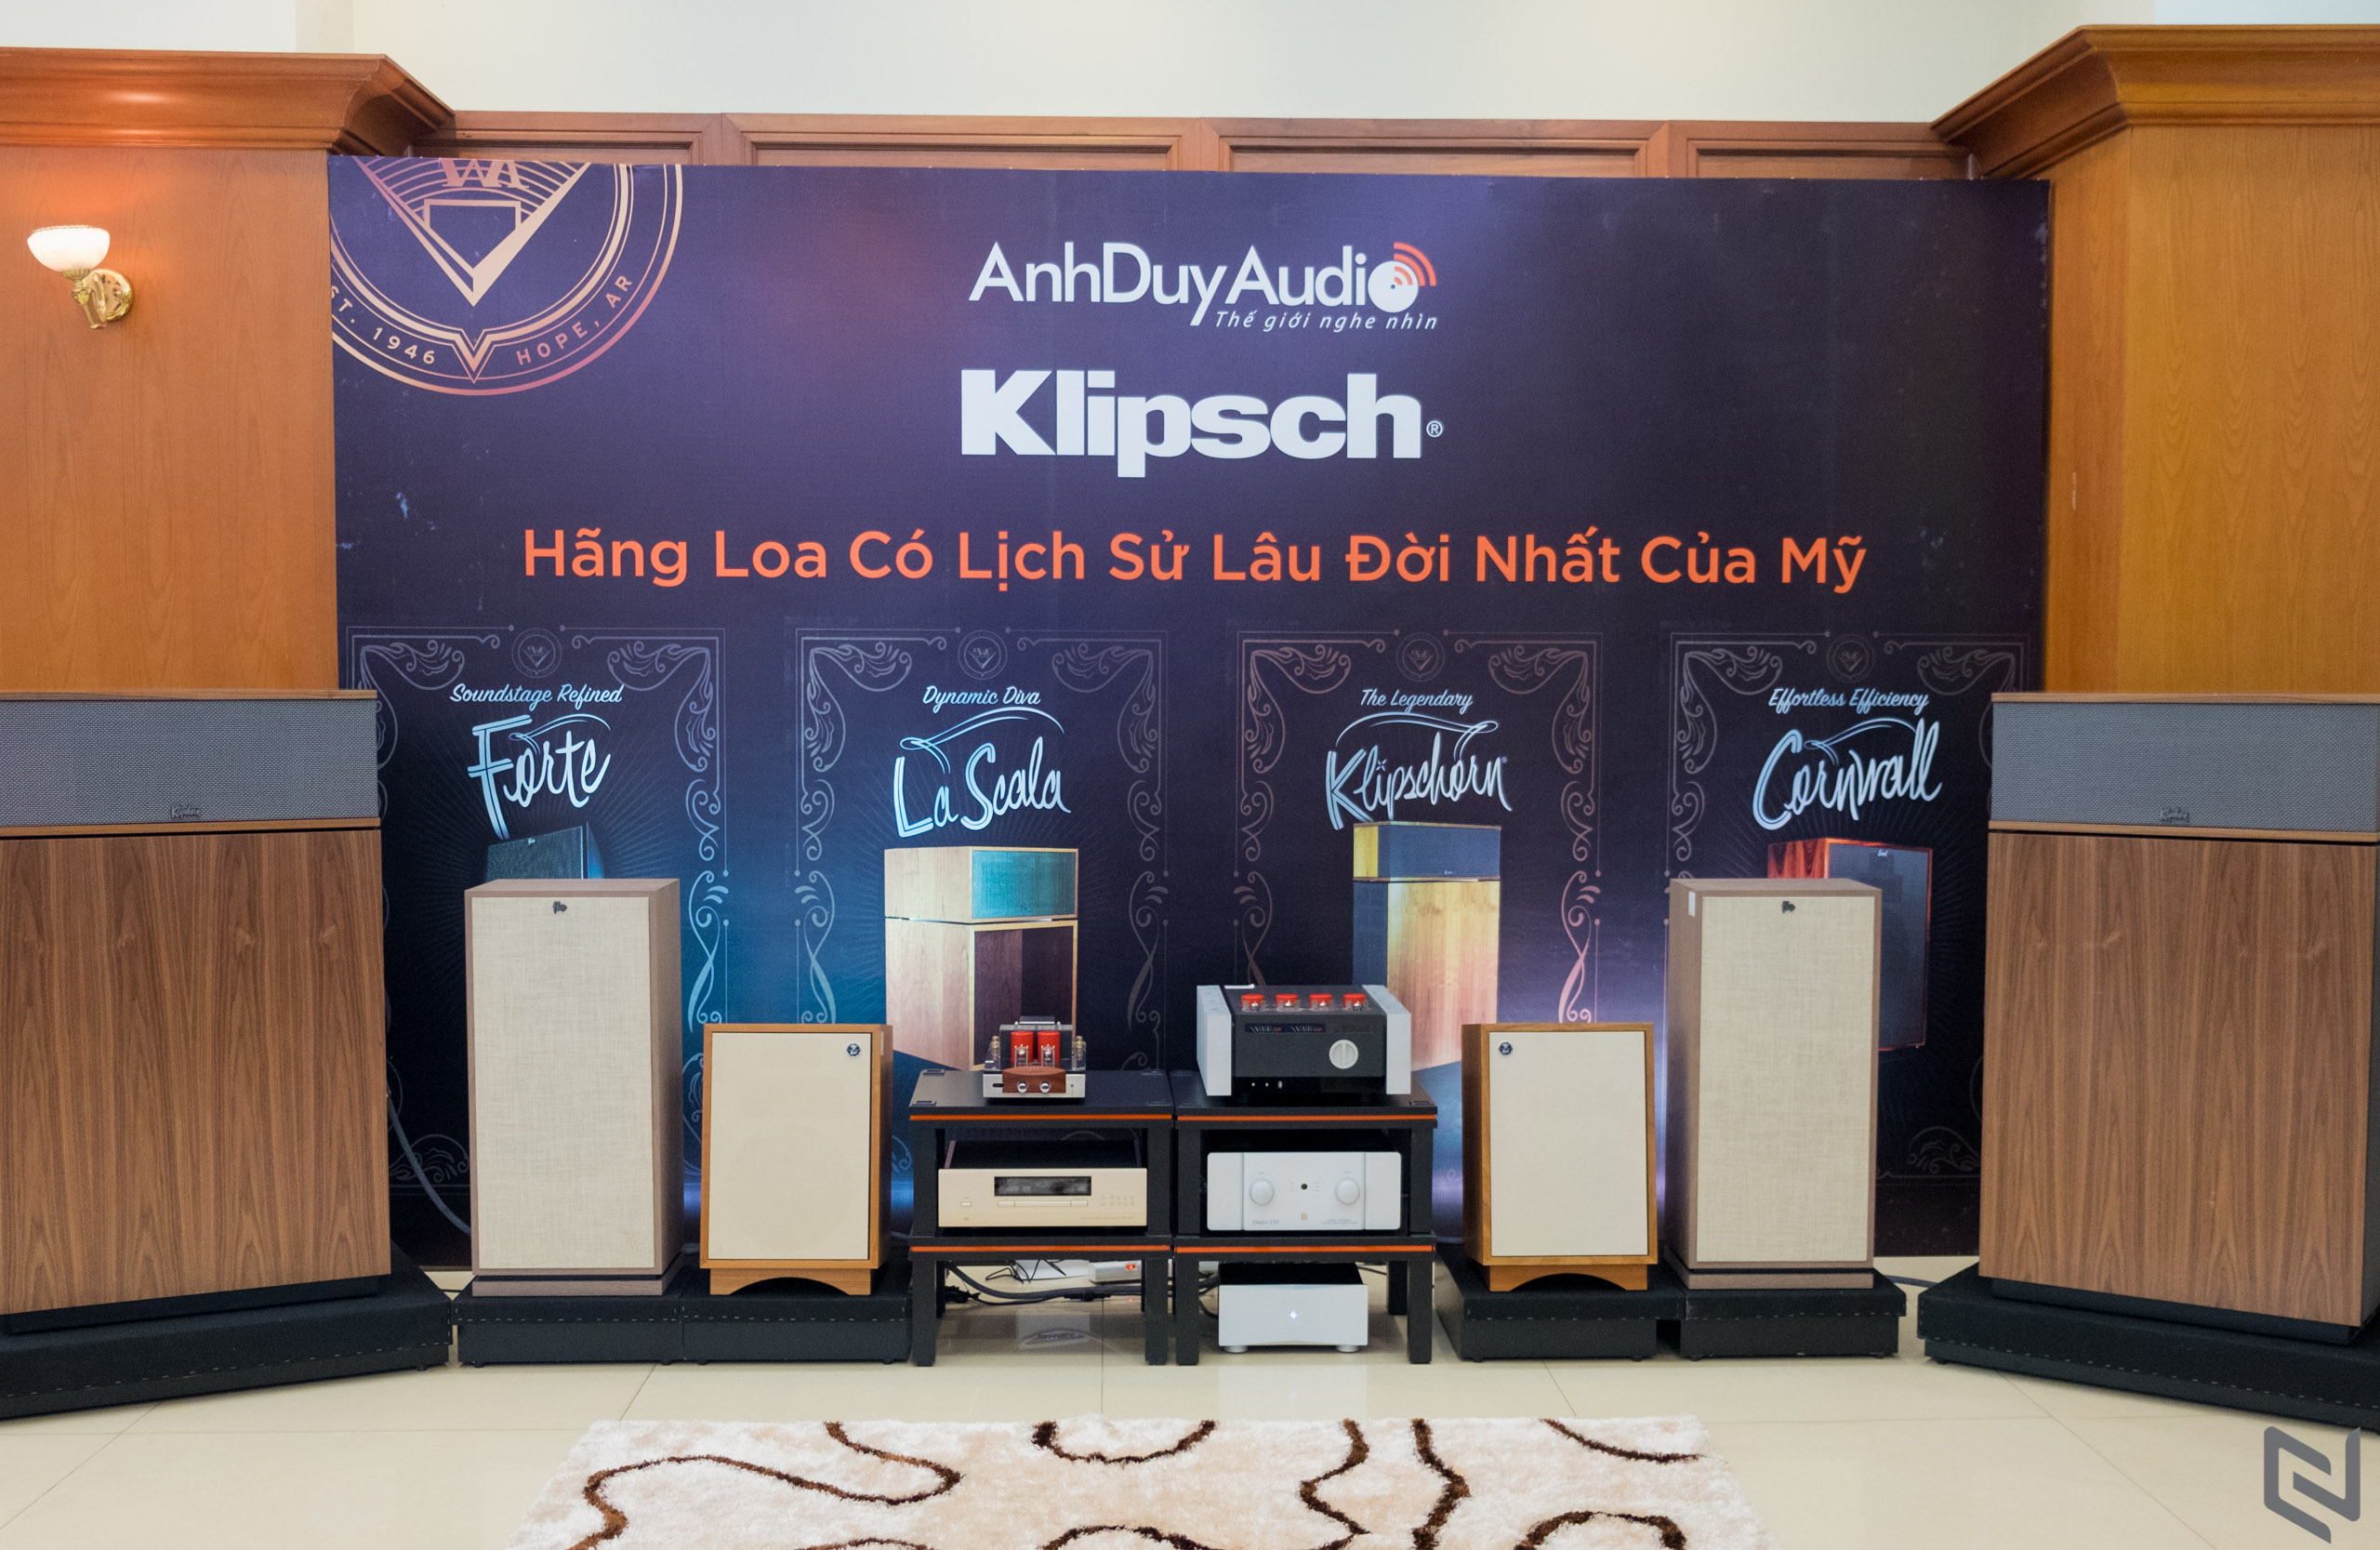 AV Show 2020 - Triển lãm thiết bị Nghe Nhìn lần thứ 18 tại Hồ Chí Minh sẽ diễn ra vào 3 ngày 30-31/10 và 1/11